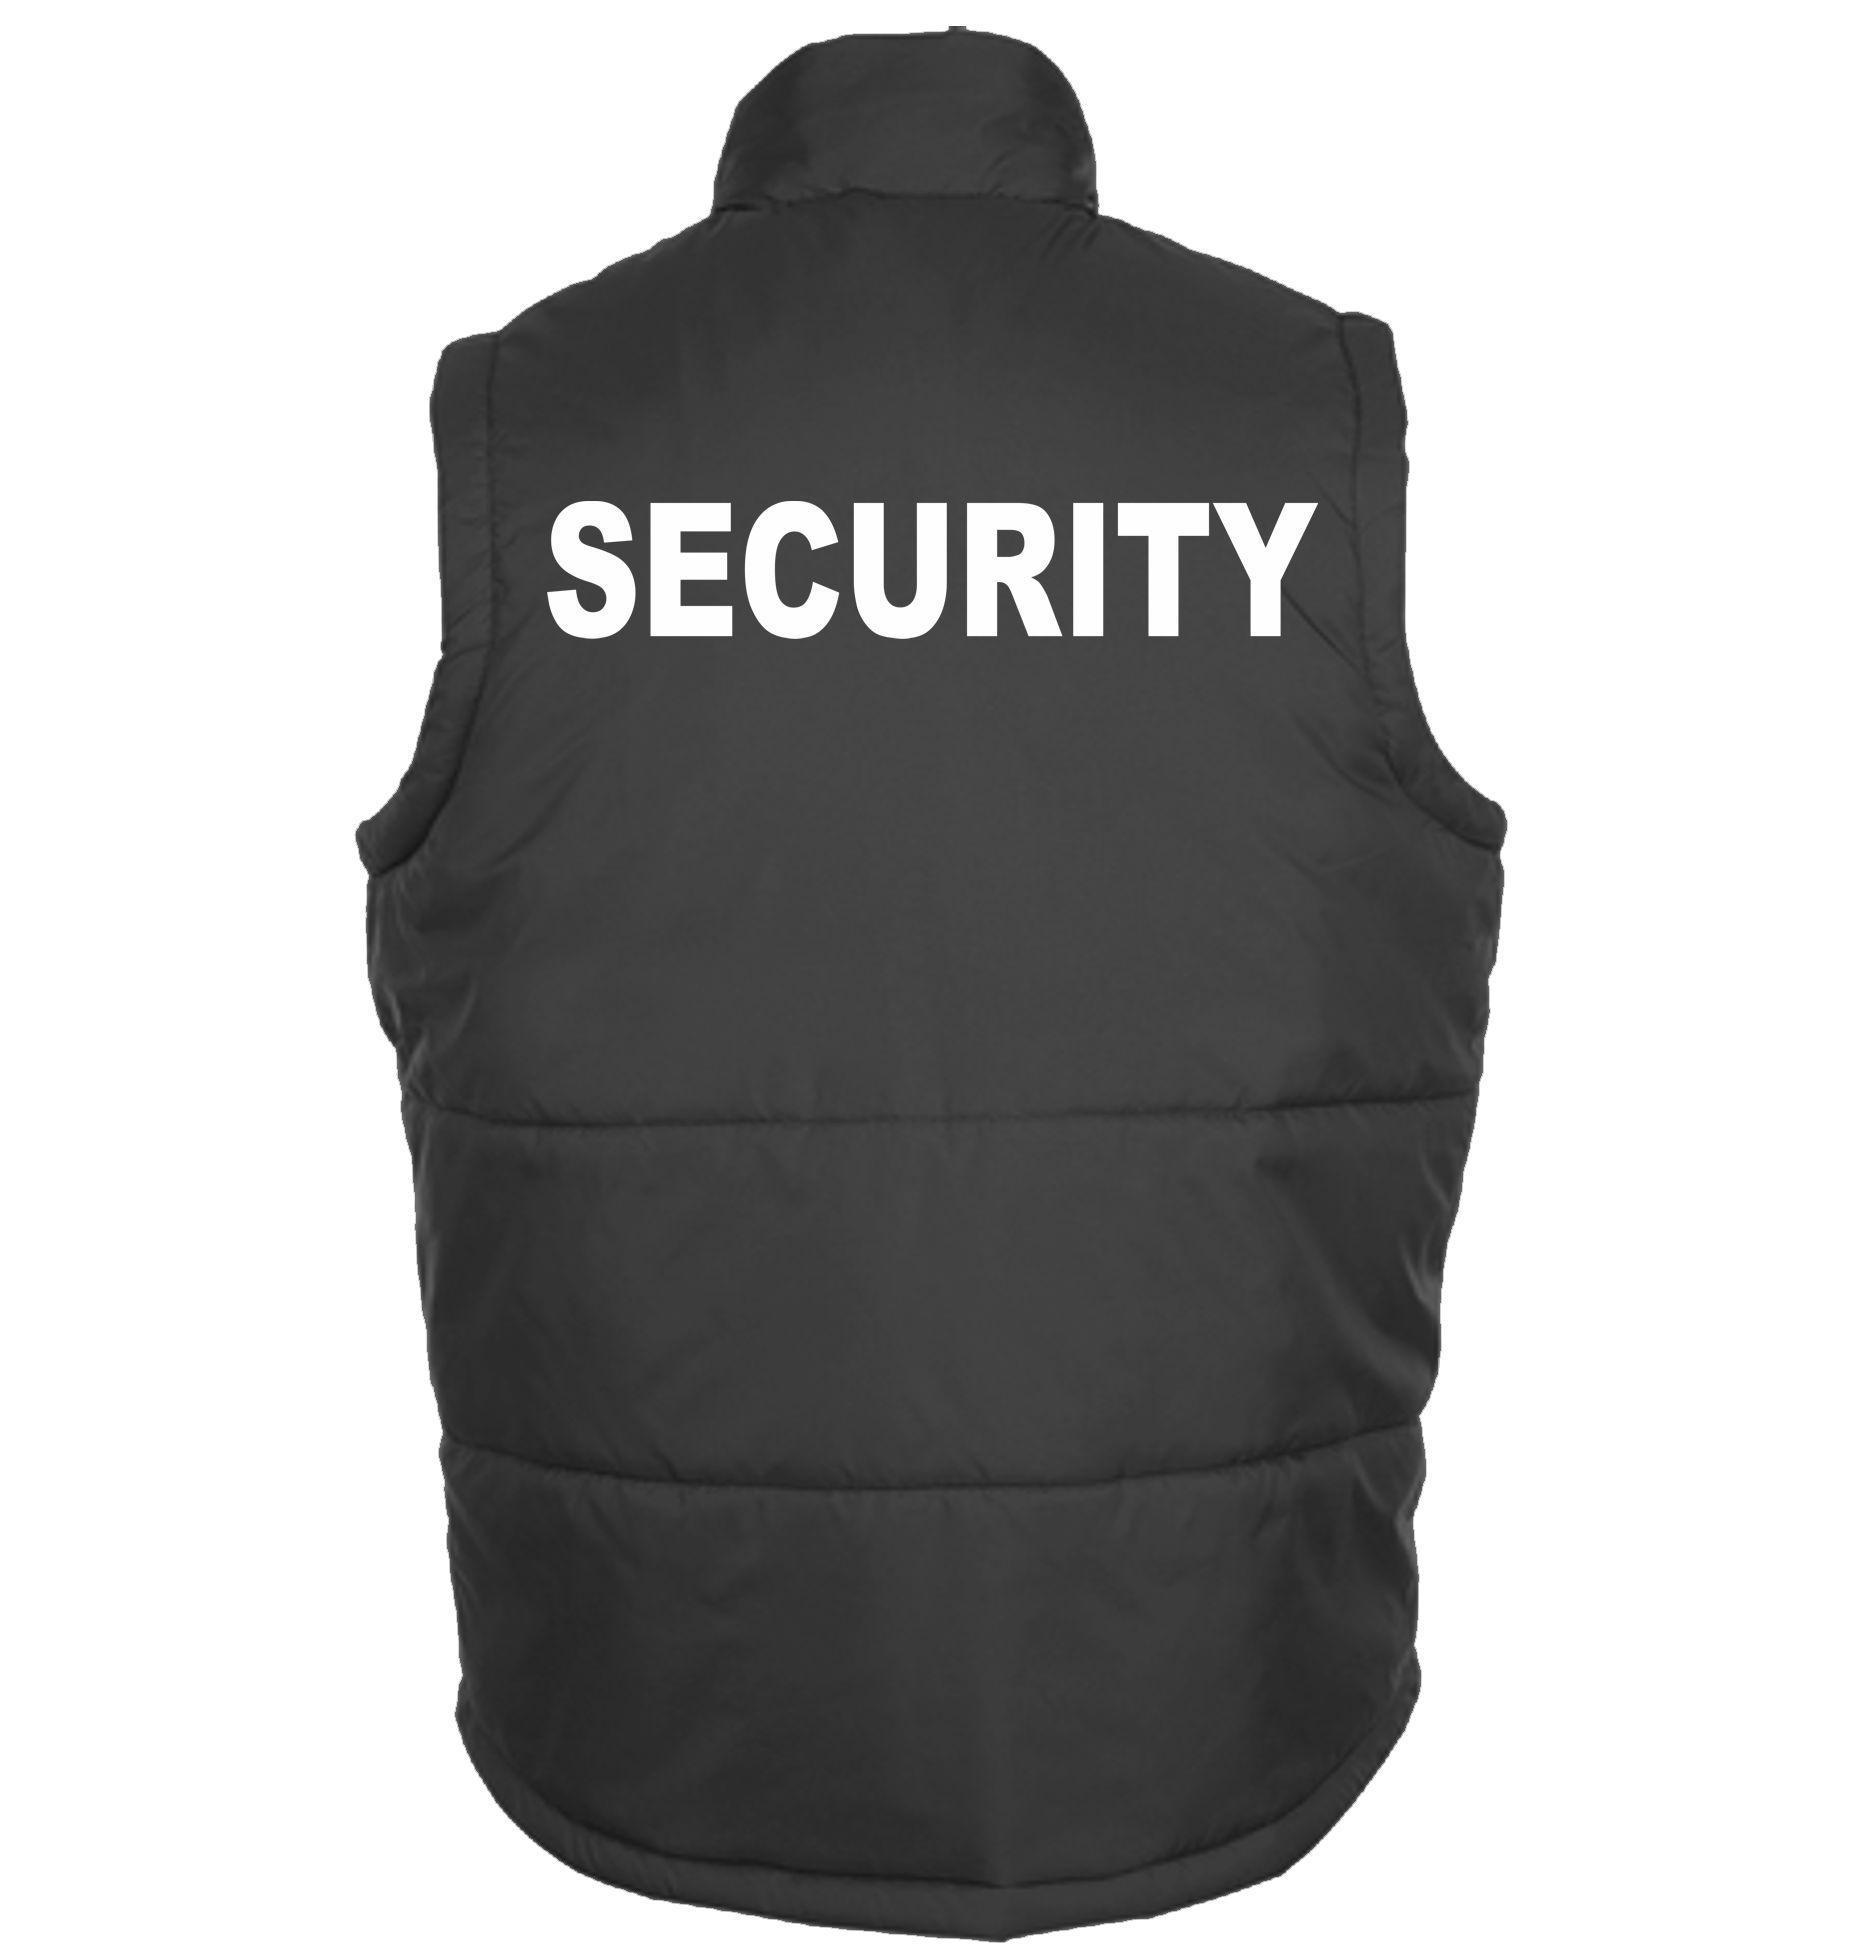 Security-Weste-Bodywarmer, Herren, Security-Bekleidung